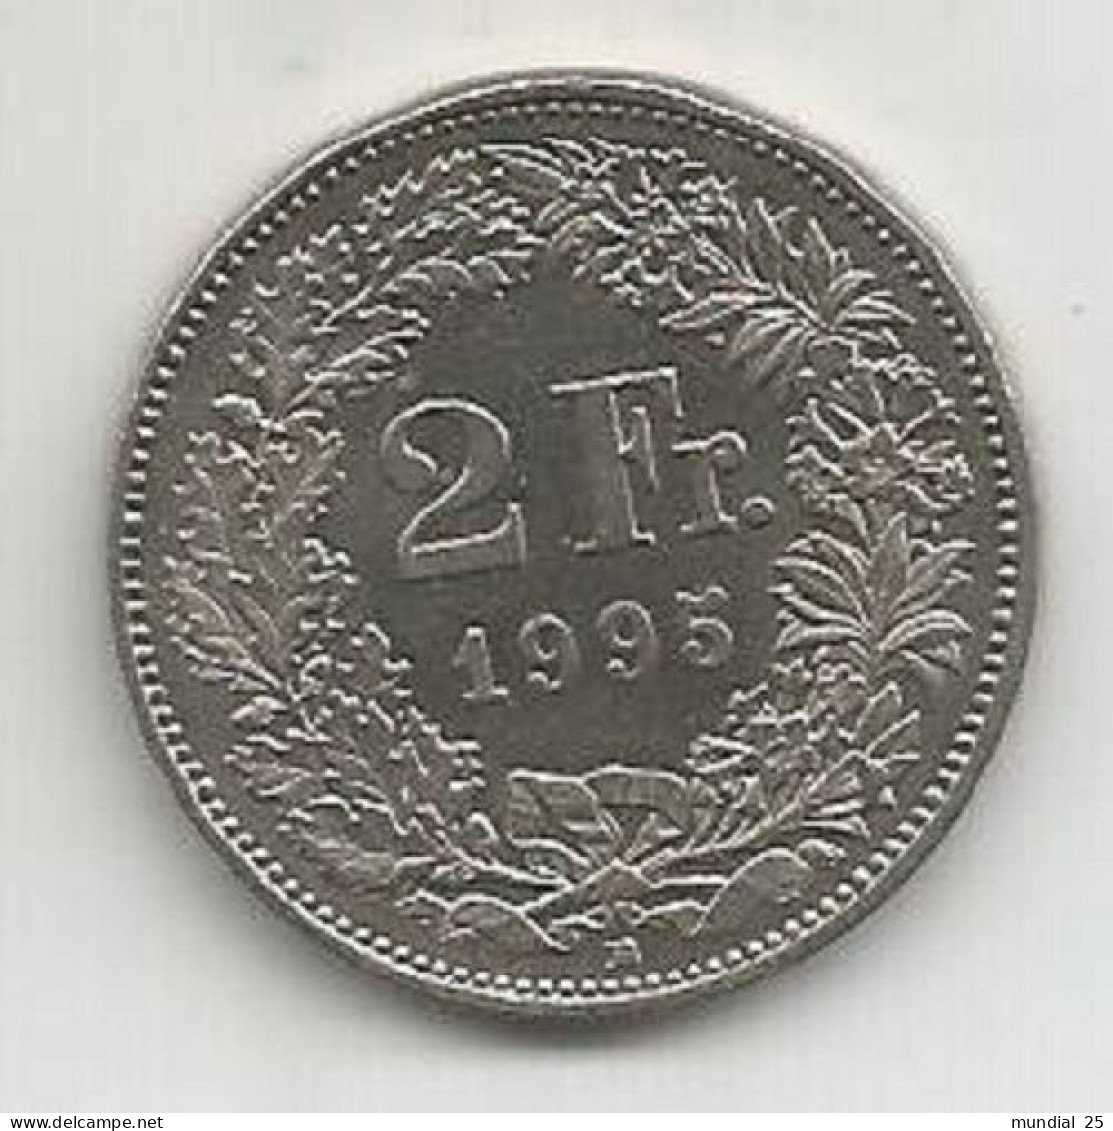 SWITZERLAND 2 FRANCS 1995 B - 2 Francs